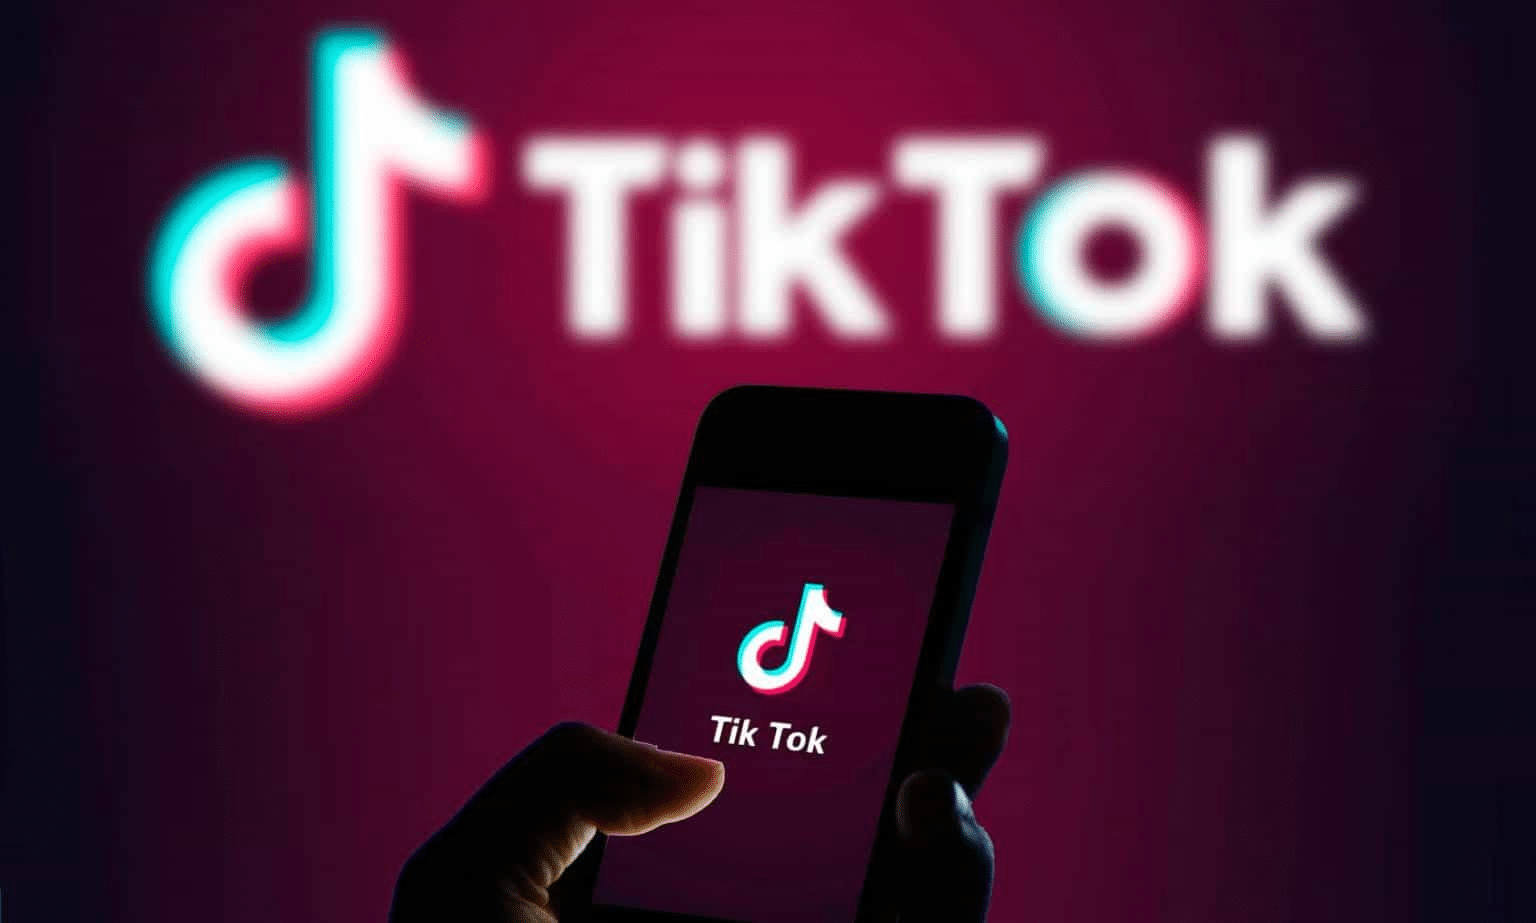 Marketing tiktok trong năm trước tiên công việc, TikTok đã có tới hơn 500 triệu người sử dụng hoạt động hàng tháng.